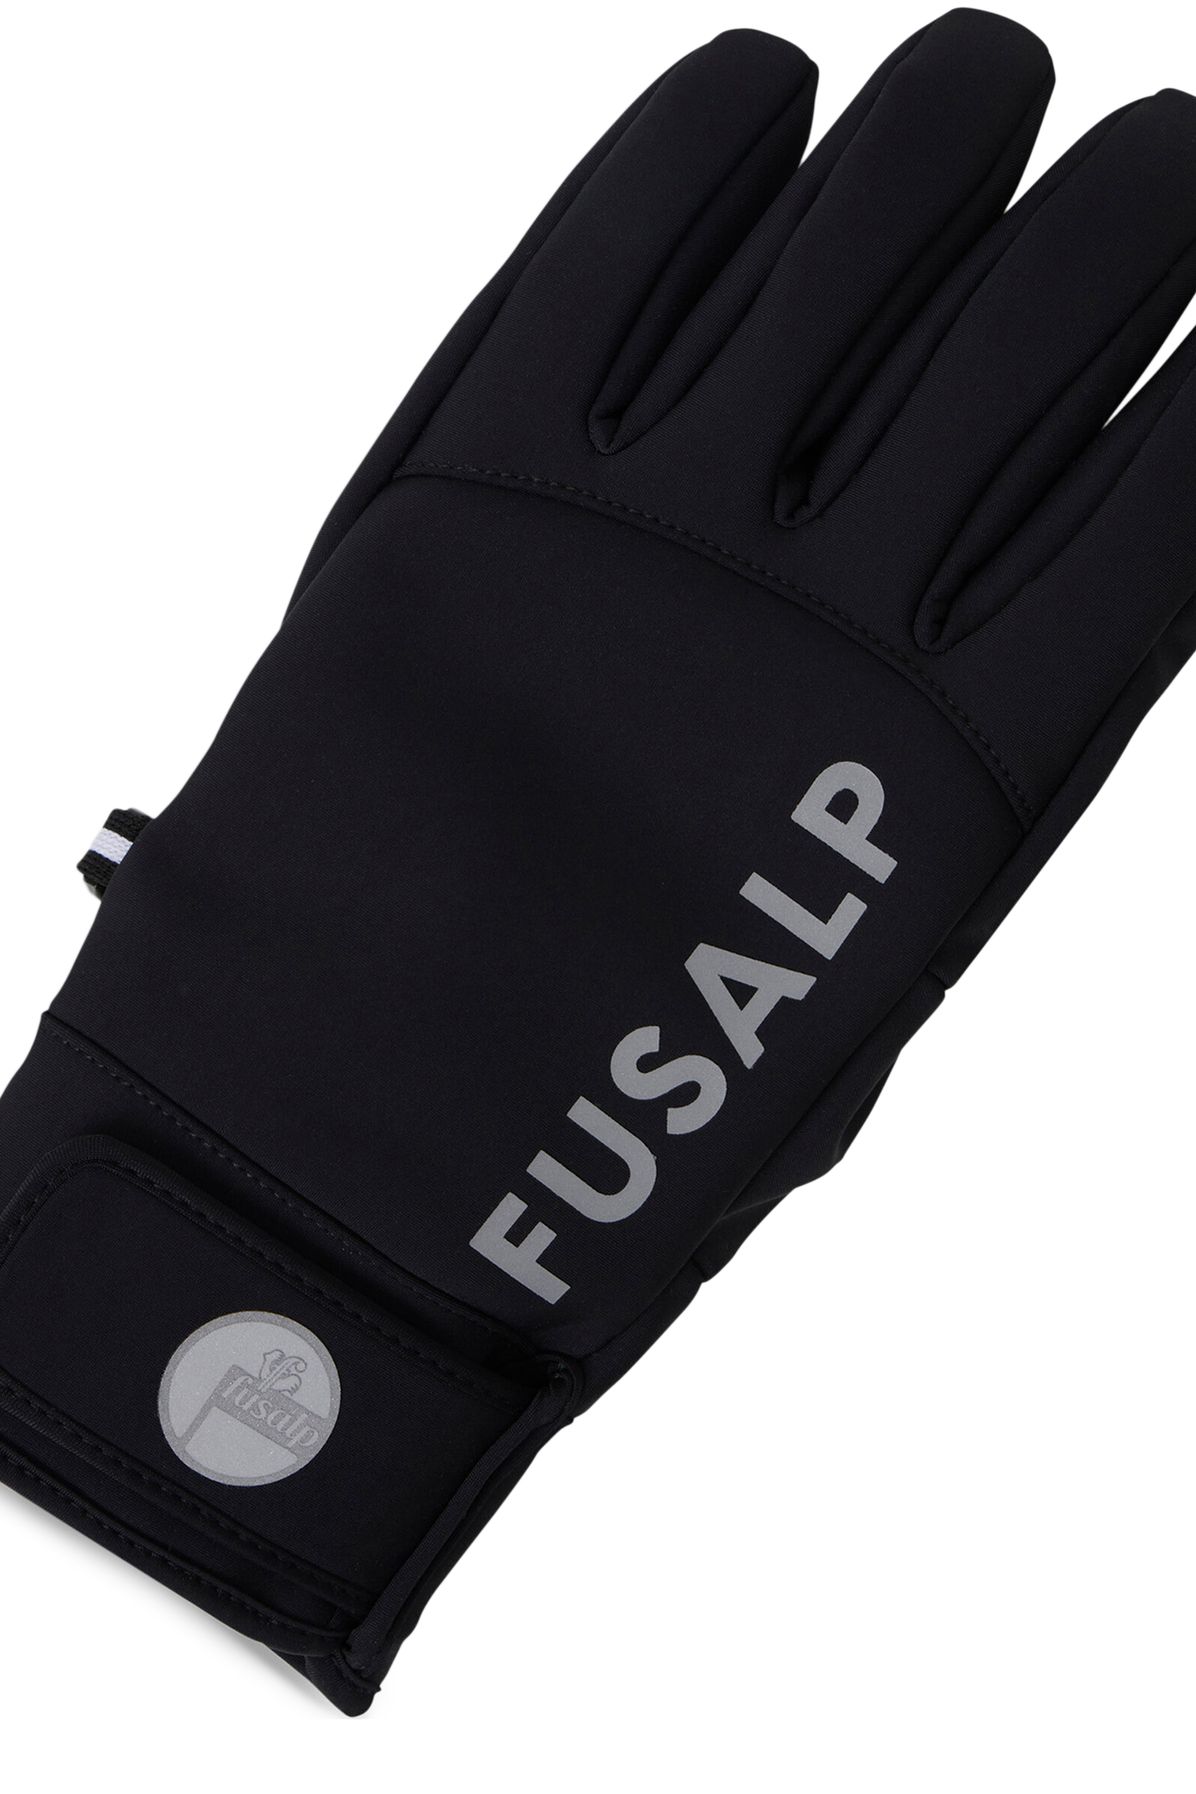 Fusalp Rock gloves